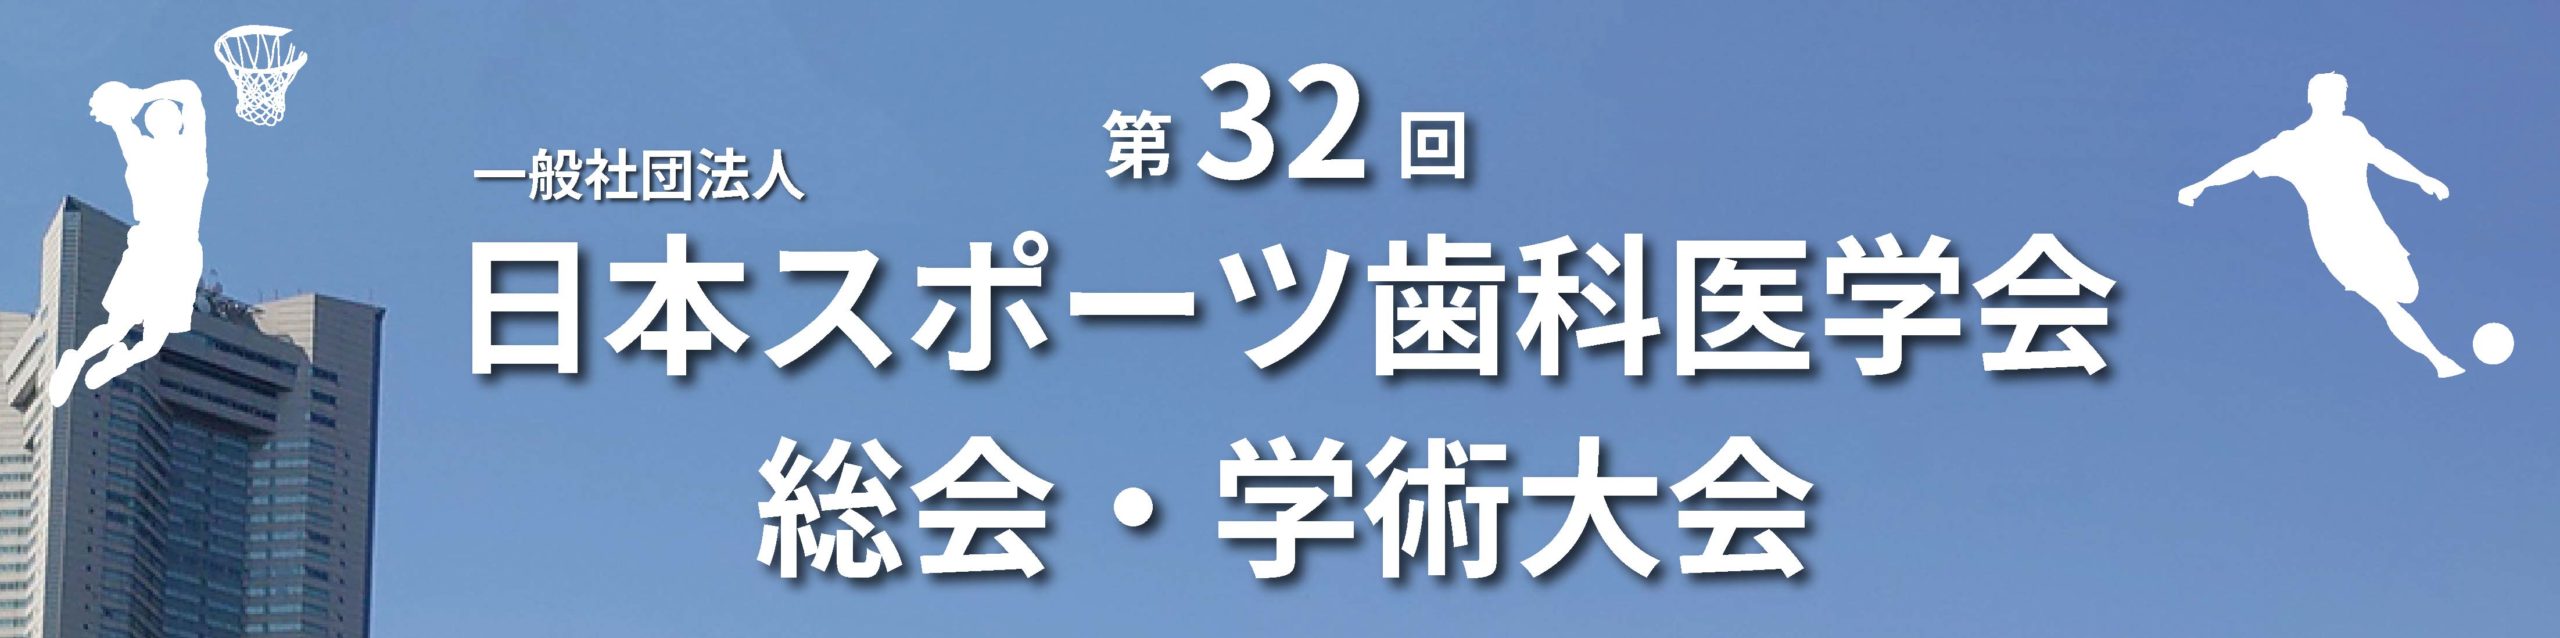 日本スポーツ歯科医学会第32回総会・学術大会